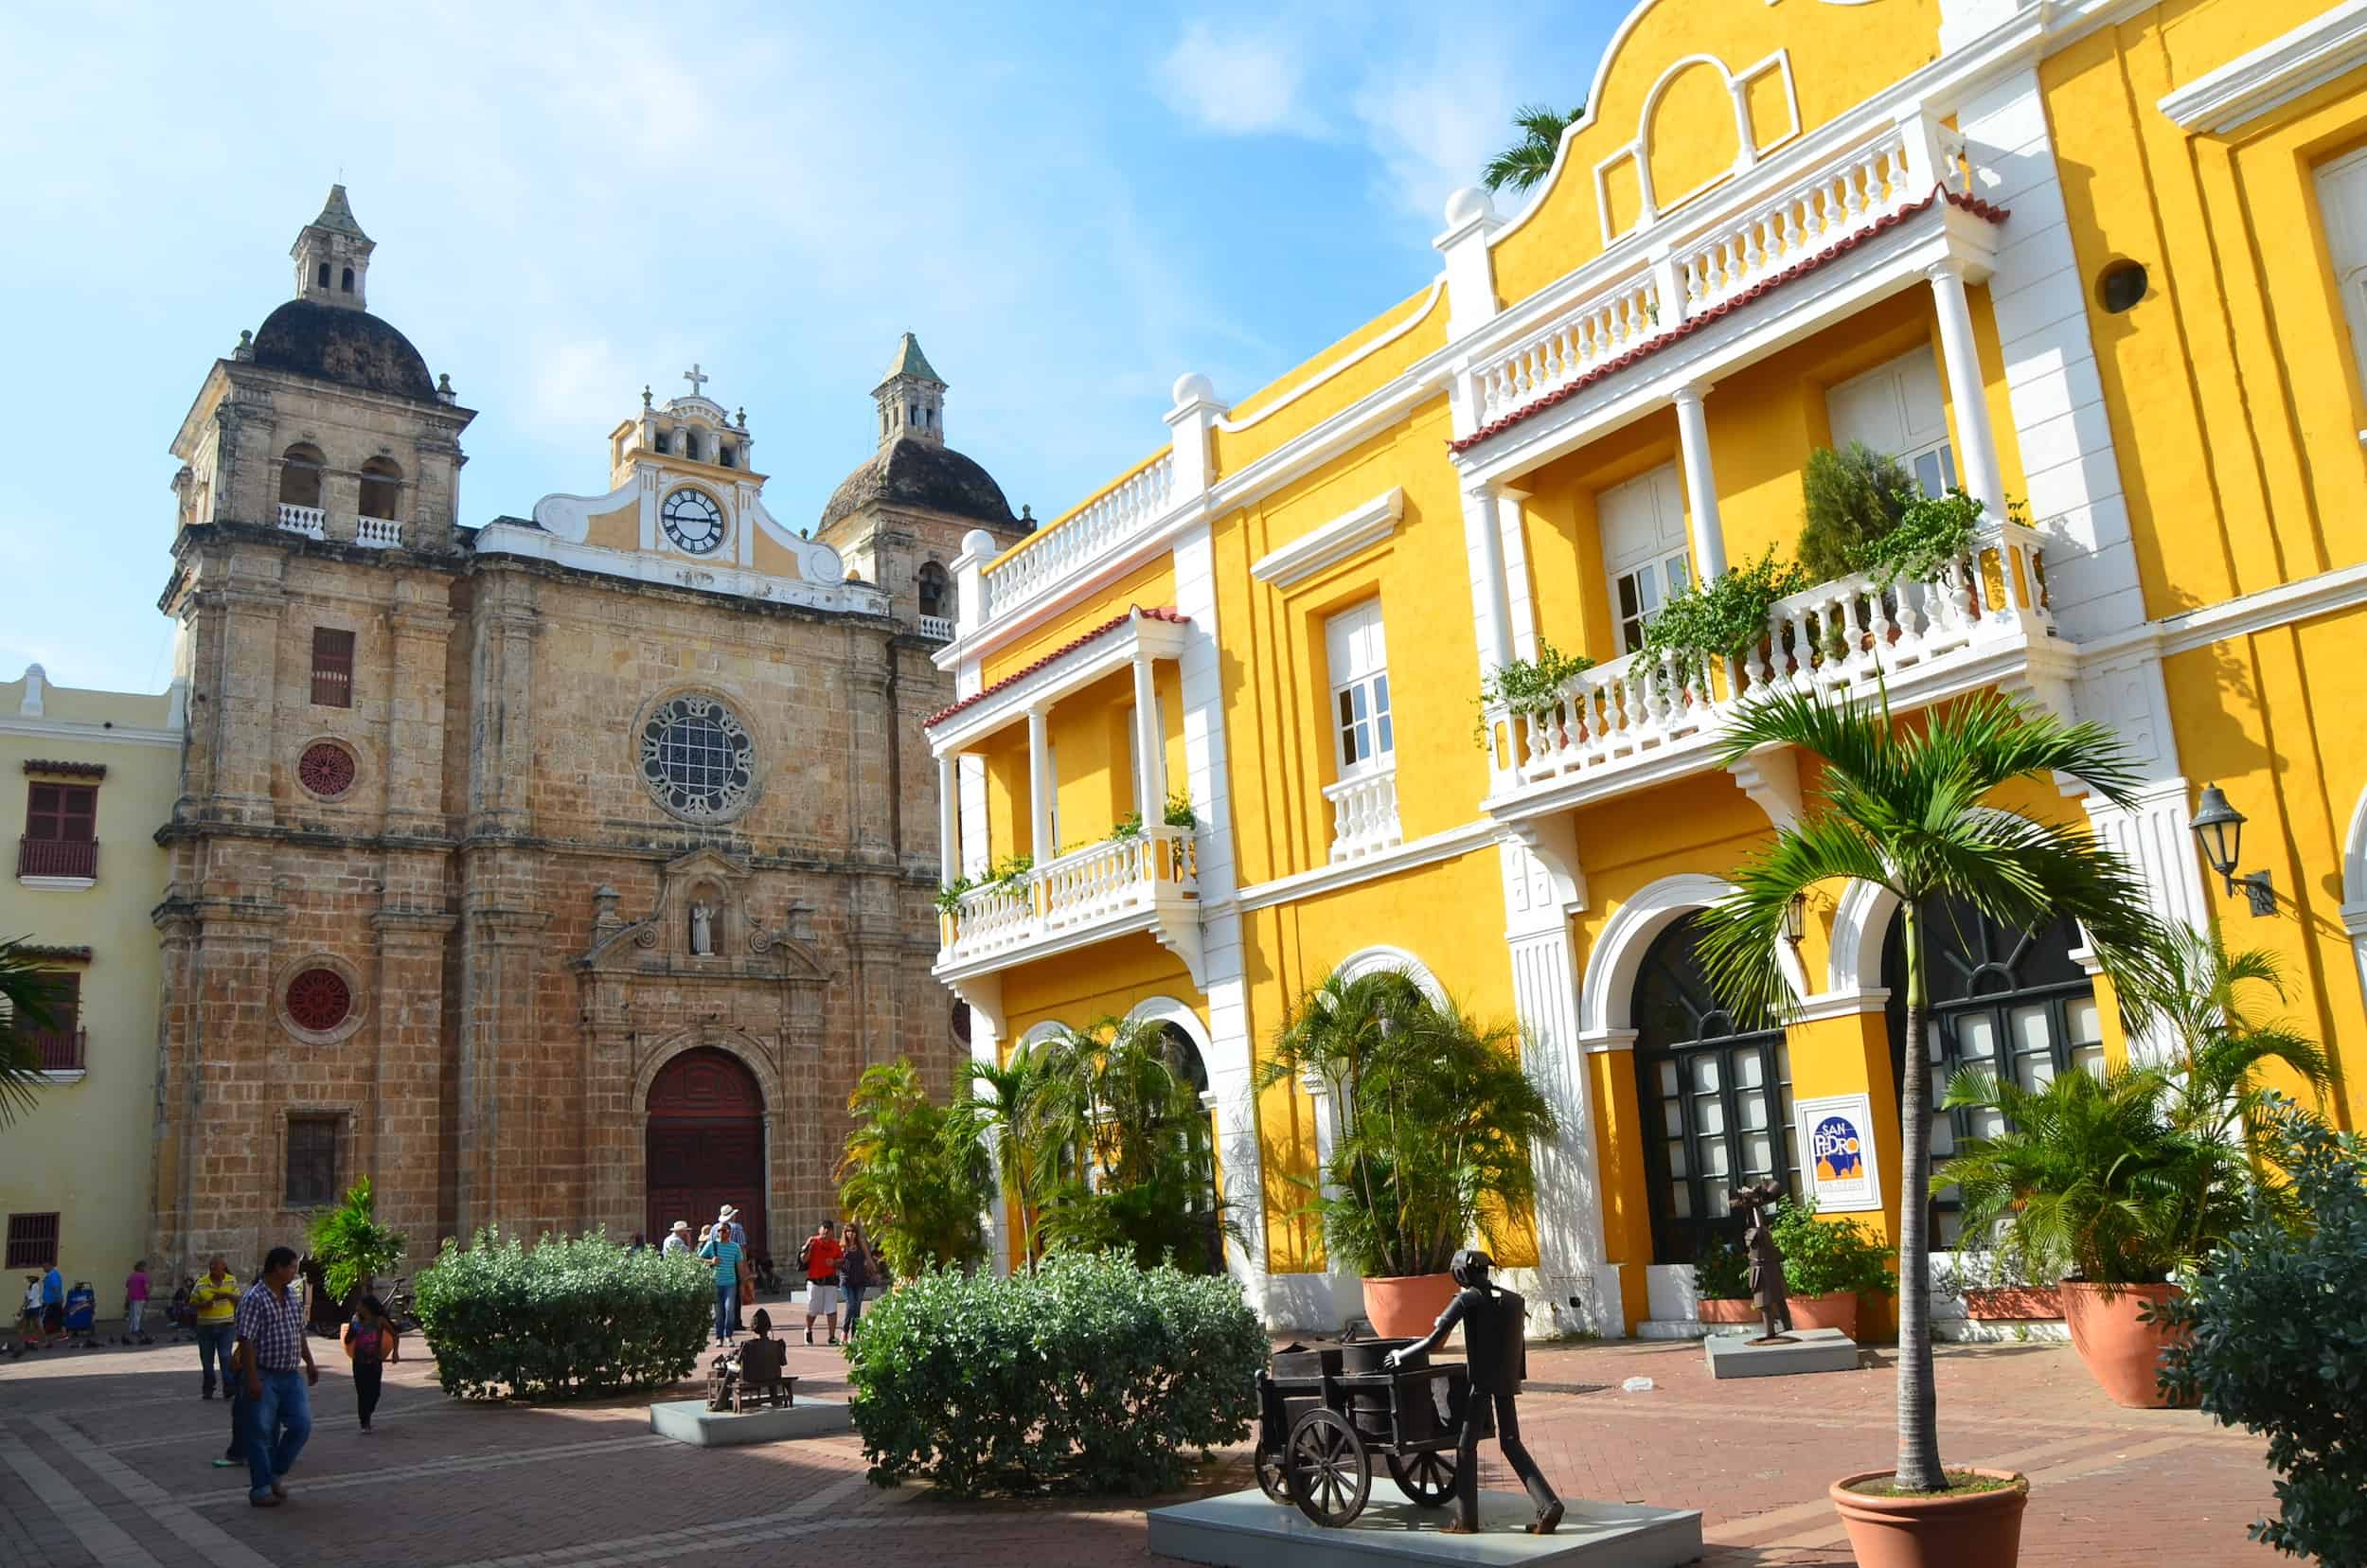 Plaza de San Pedro Claver in Cartagena, Colombia